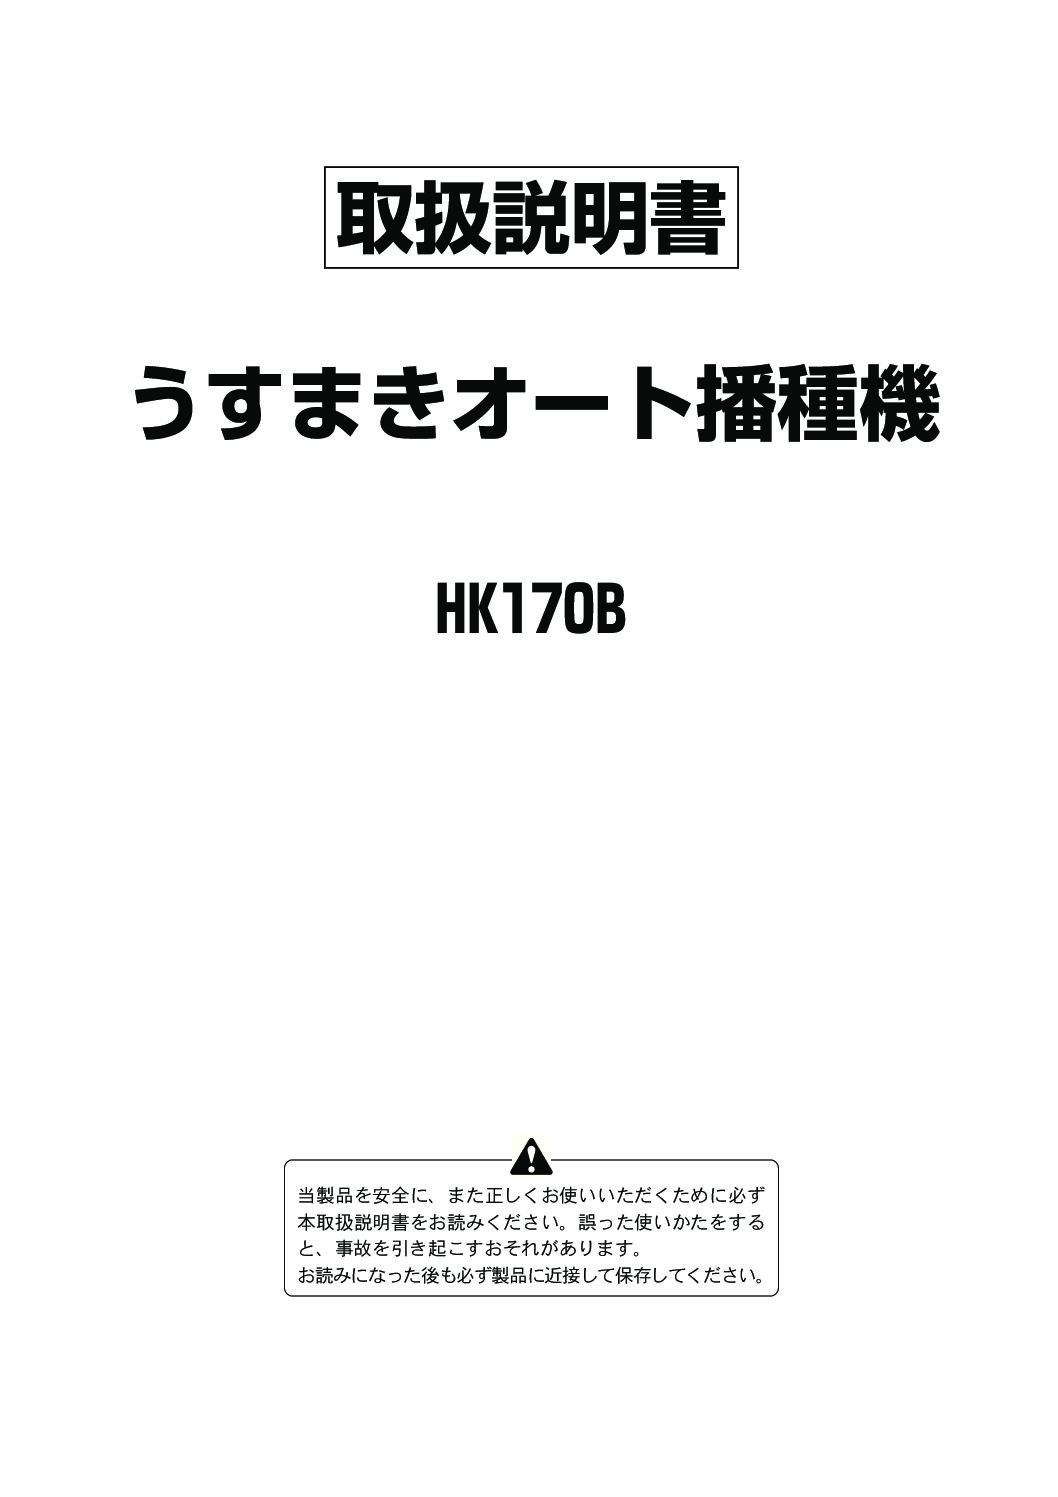 HK170B | 株式会社スズテック